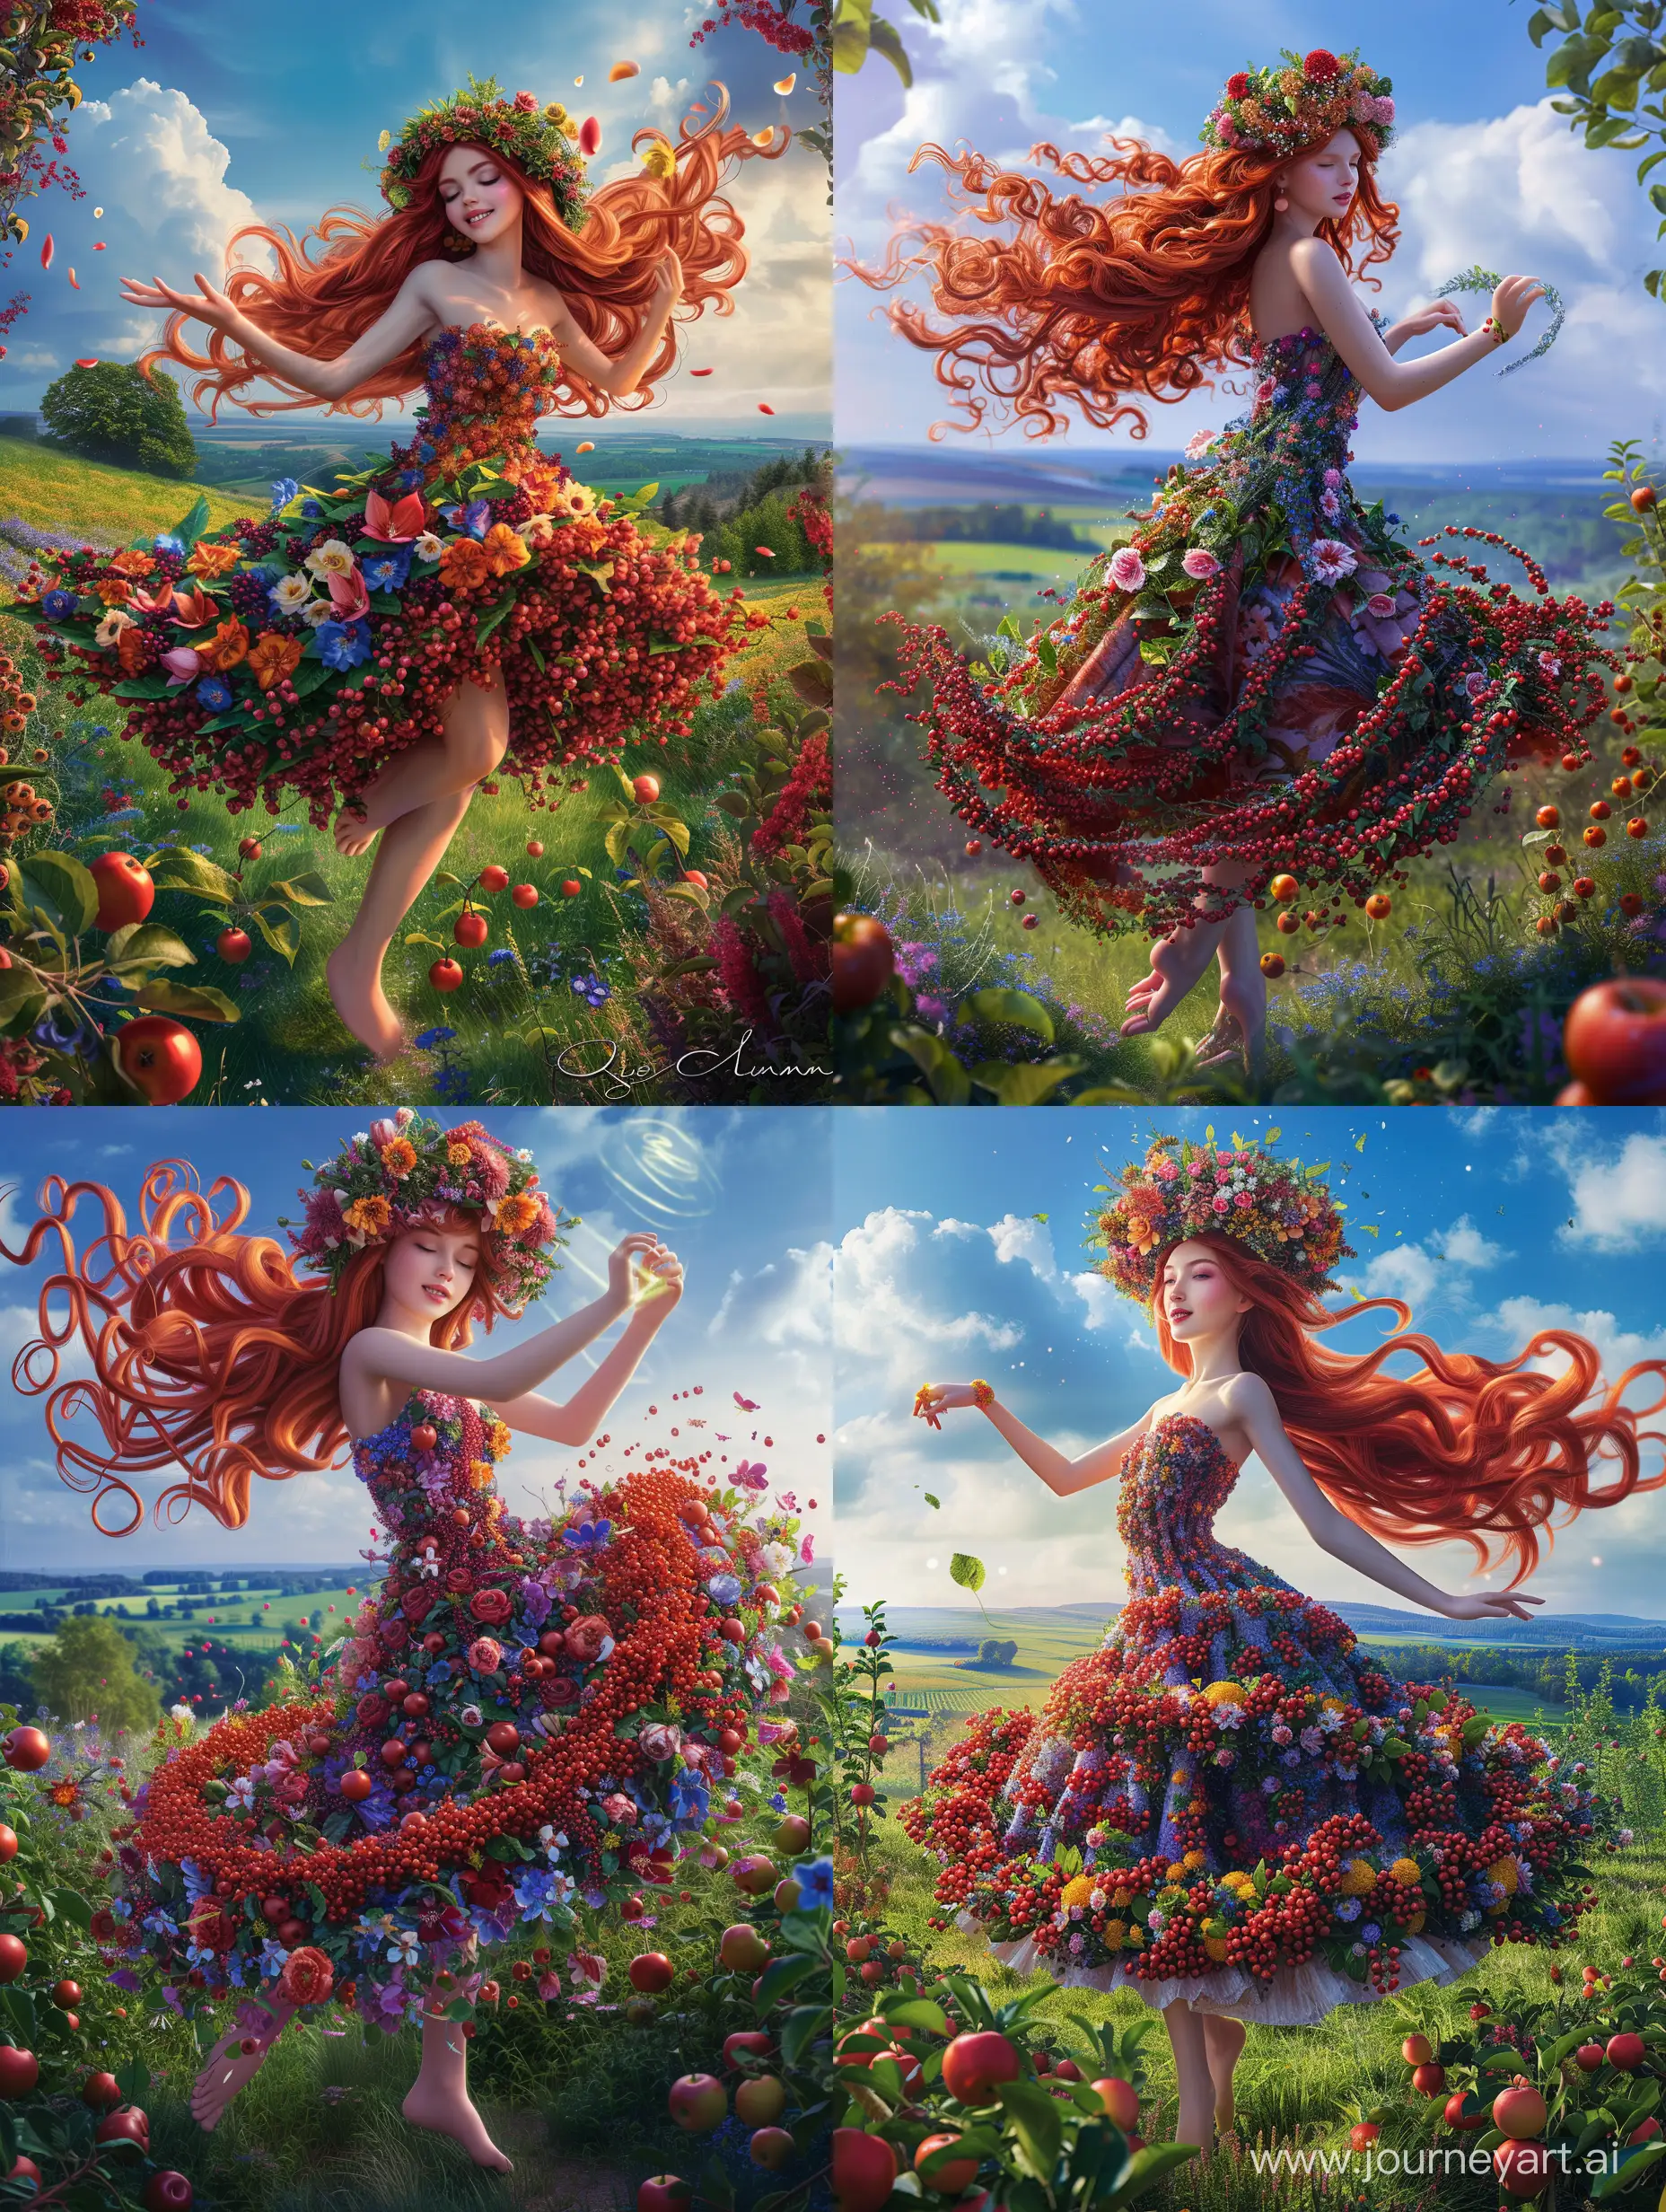 Enchanting-Summer-Queen-Dancing-in-Blossoming-Garden